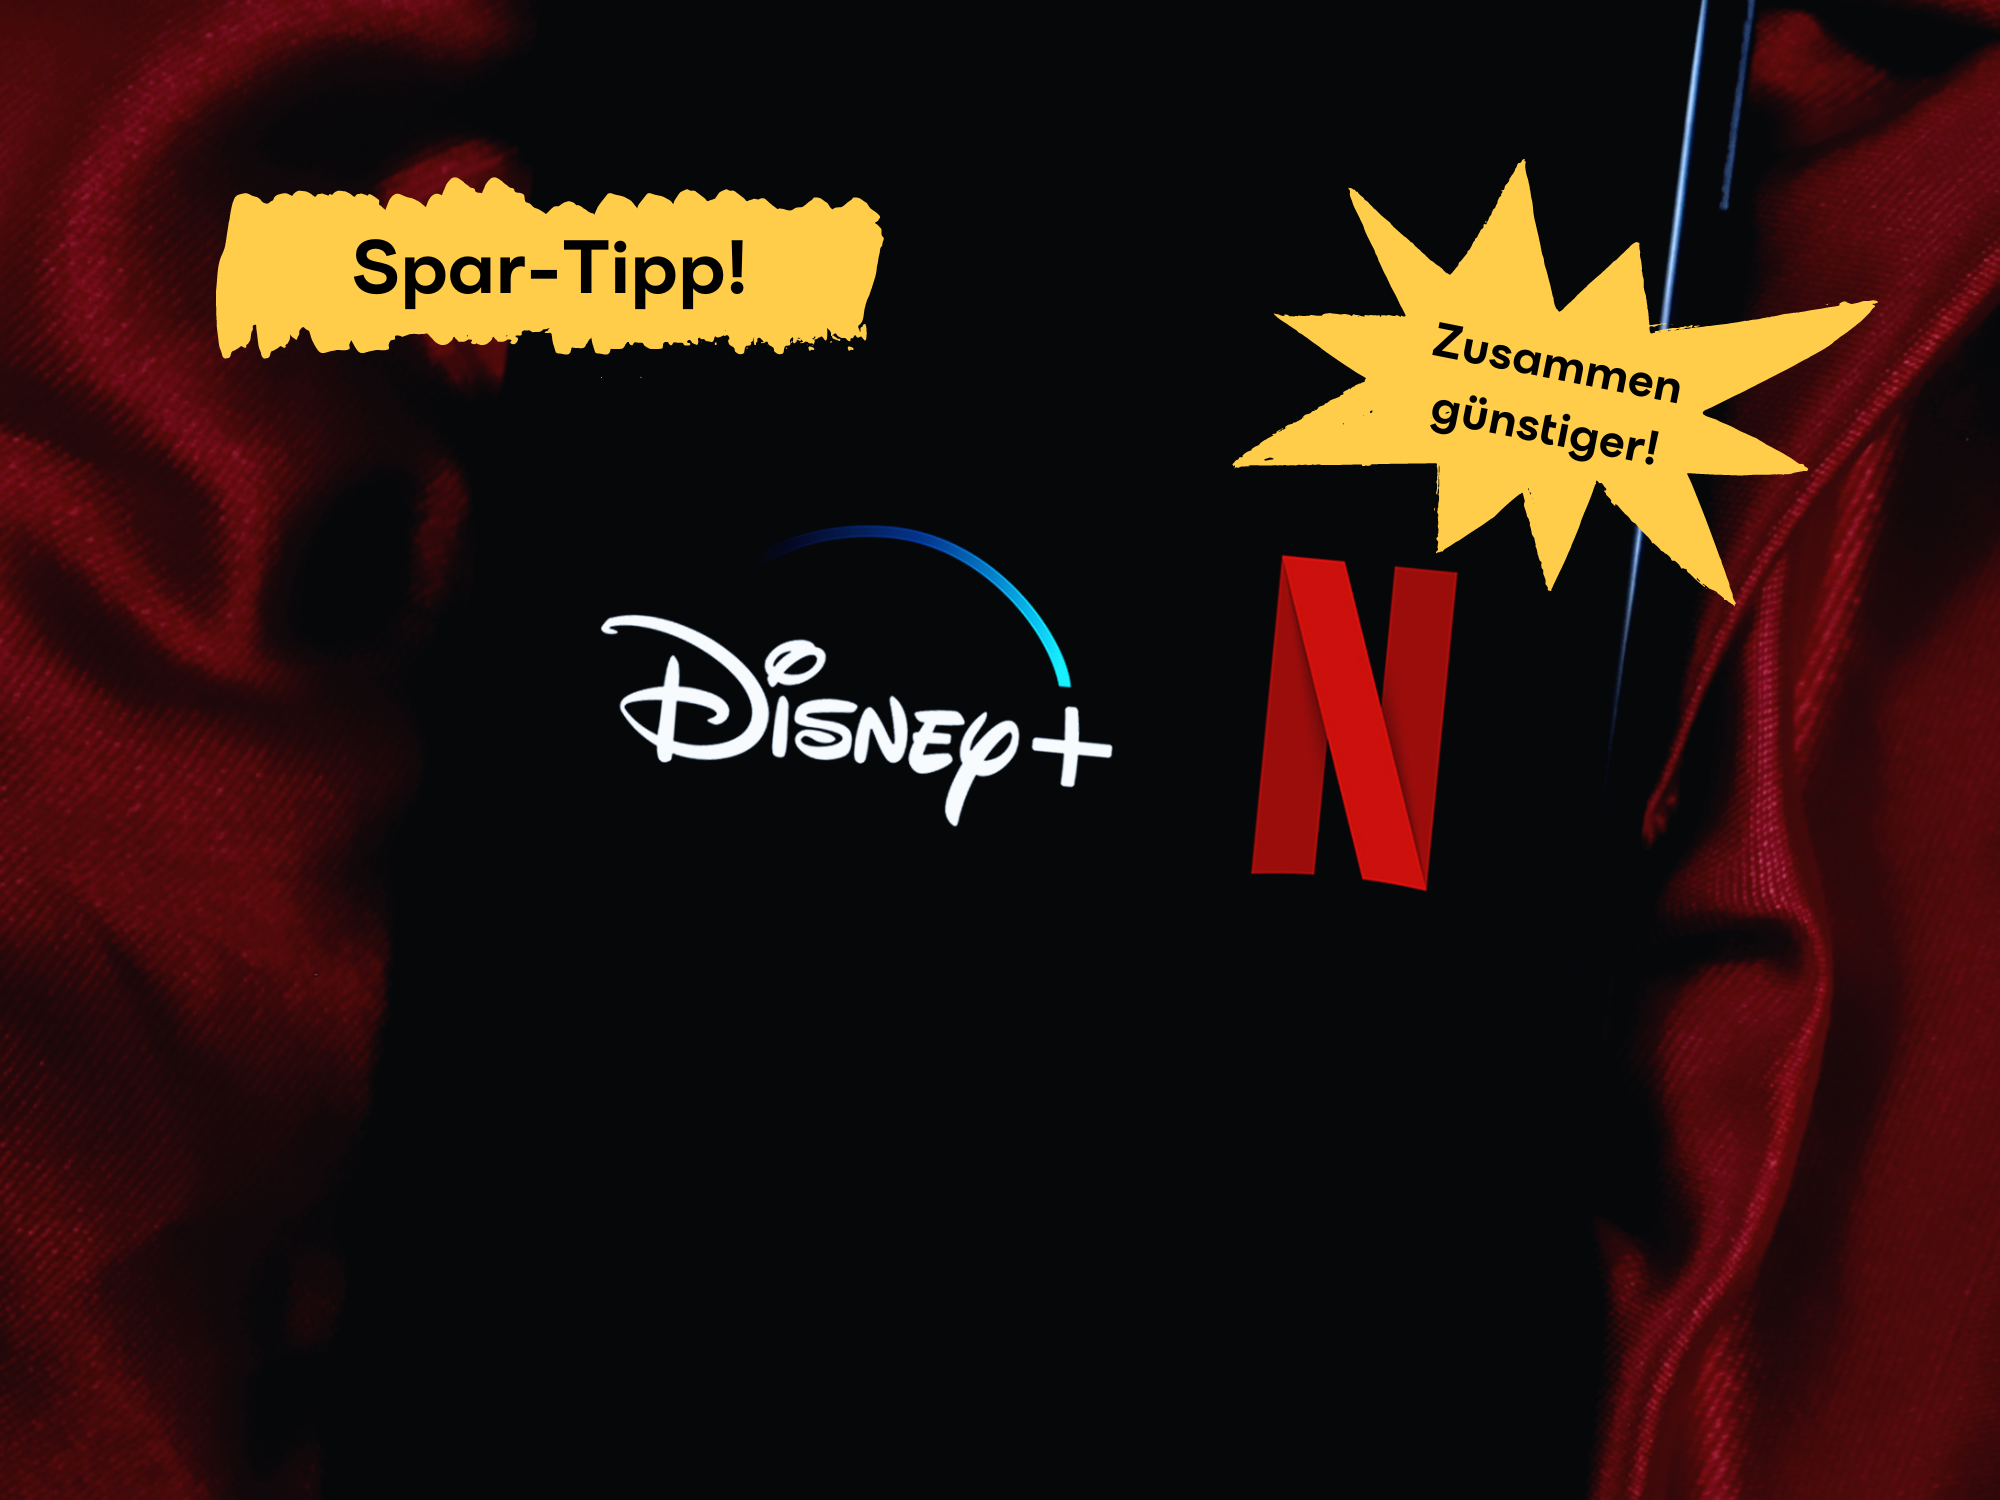 Genial: Netflix und Disney+ dank Streaming-Tipp zusammen günstiger